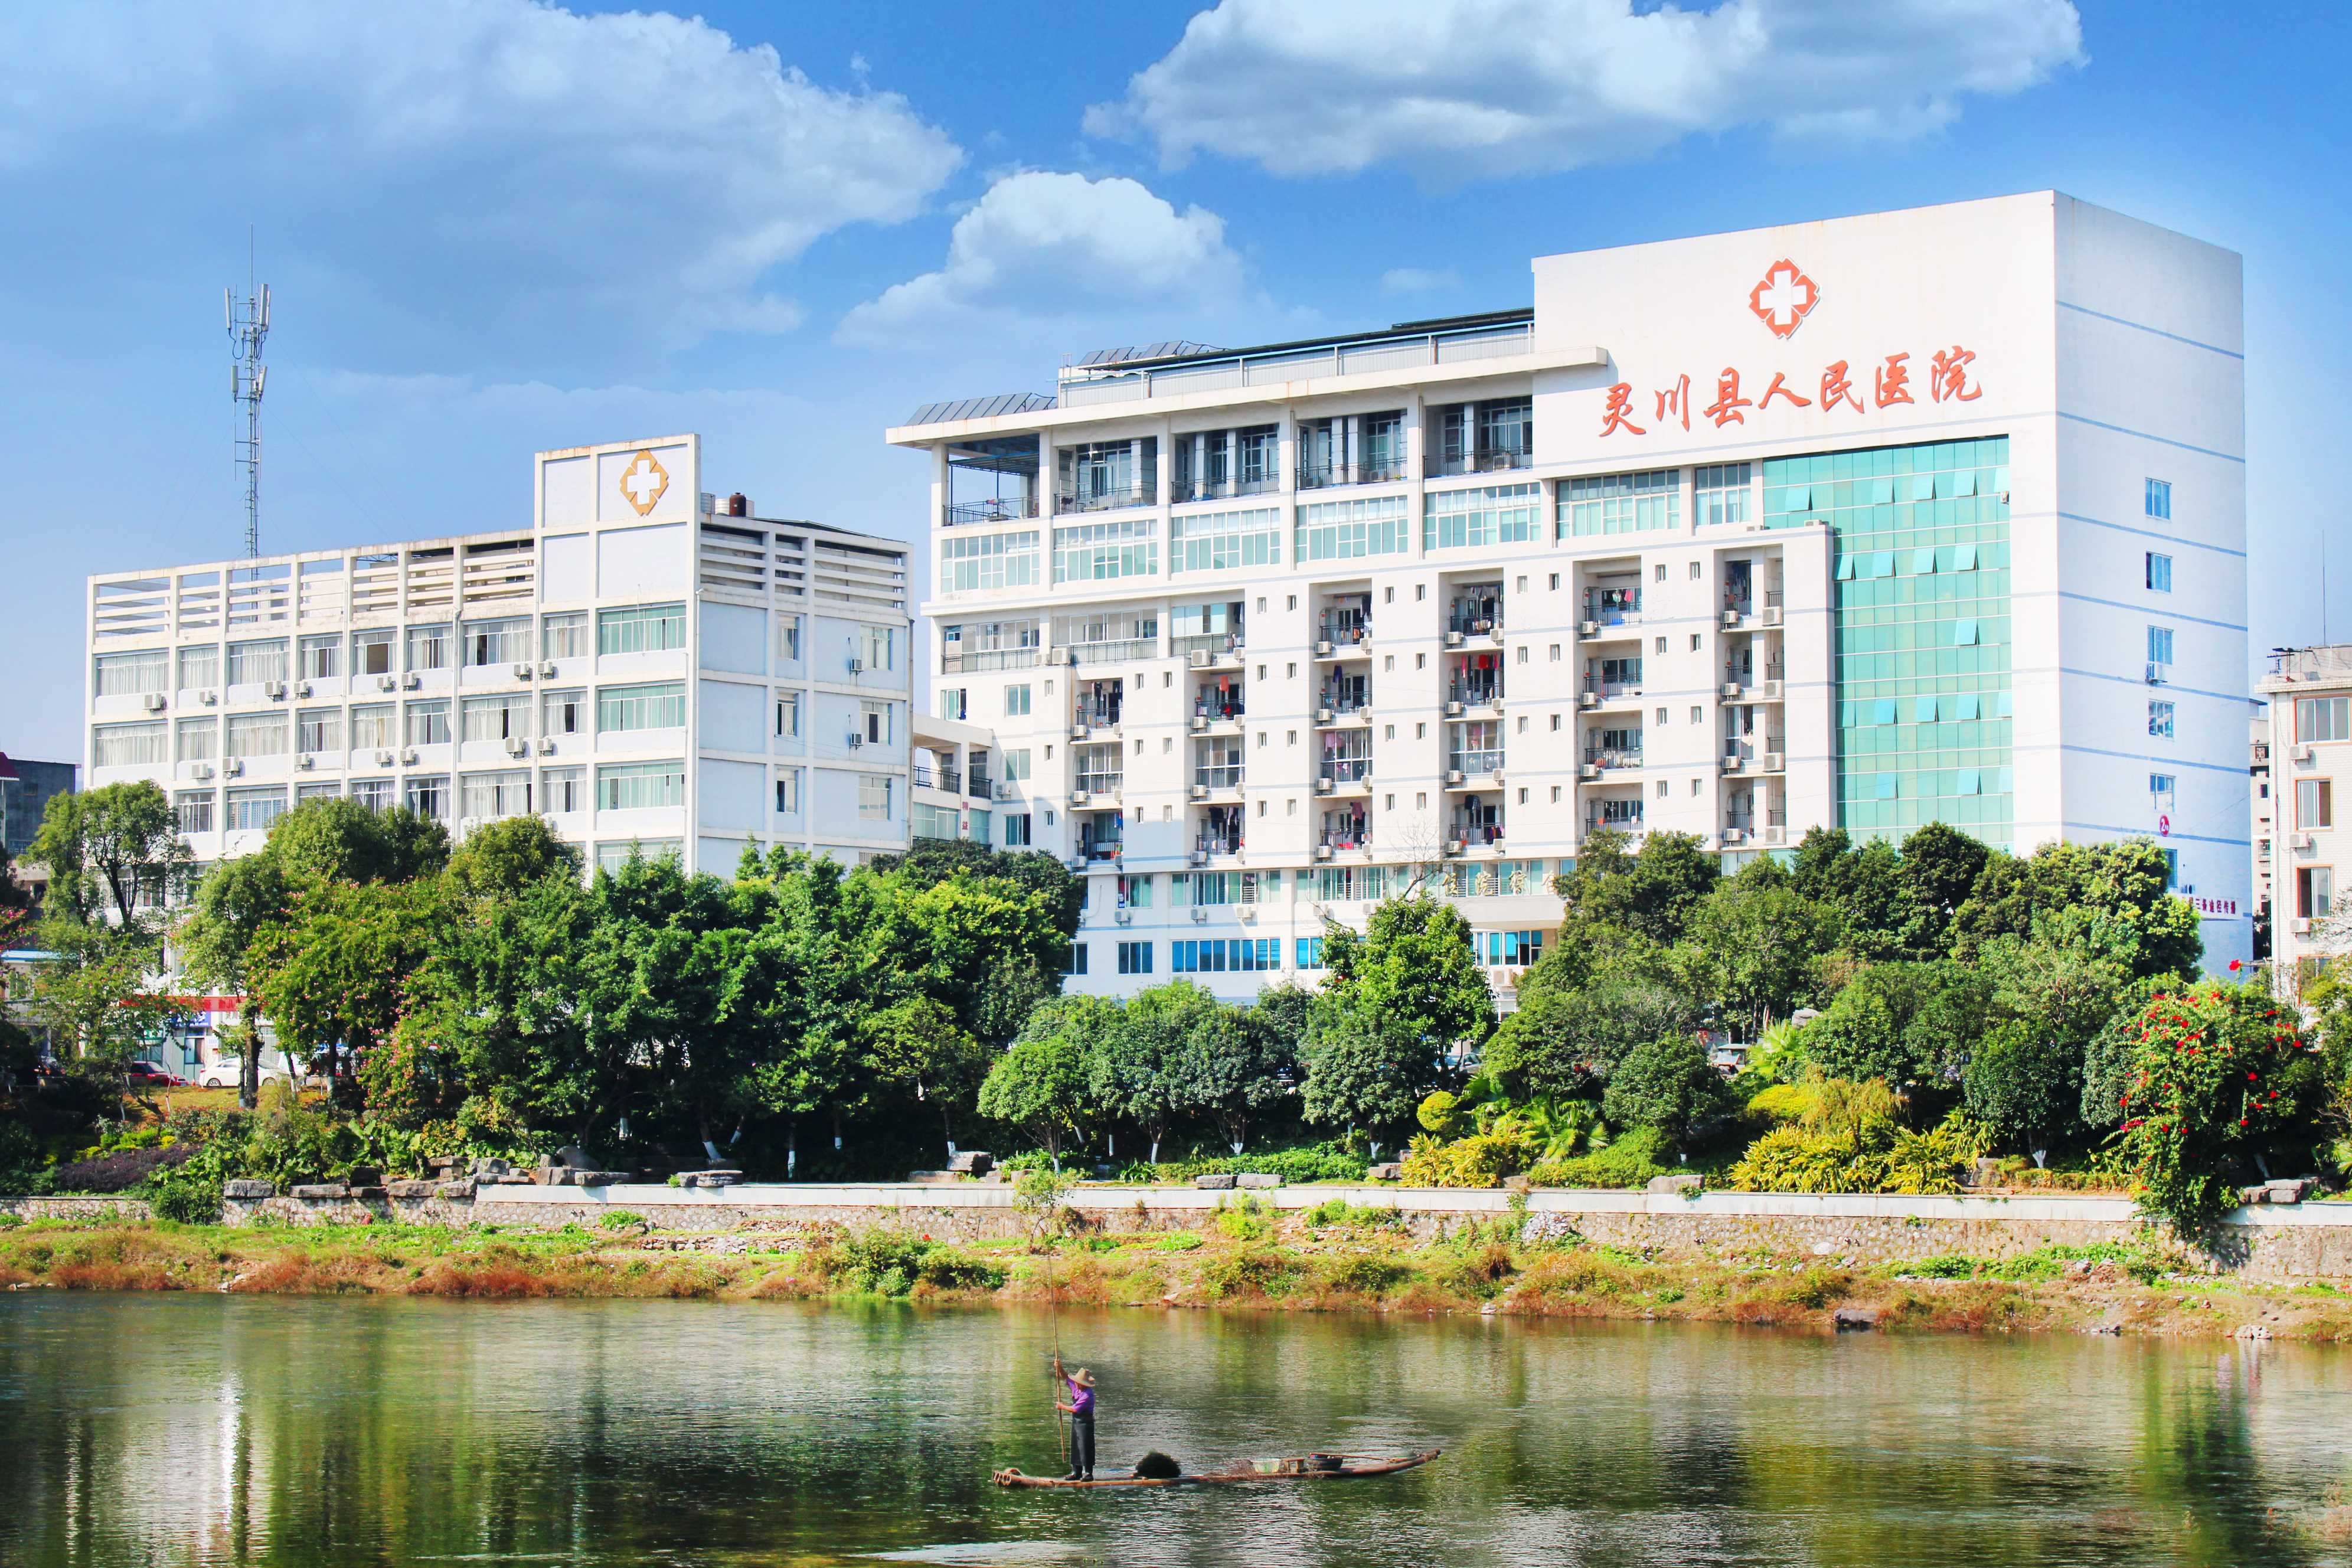 唐河县人民医院2021年关于公开招聘全日制临床医学专业人才的公告 - 科研教学 - 唐河县人民医院 - 唐河县唯一三级综合医院